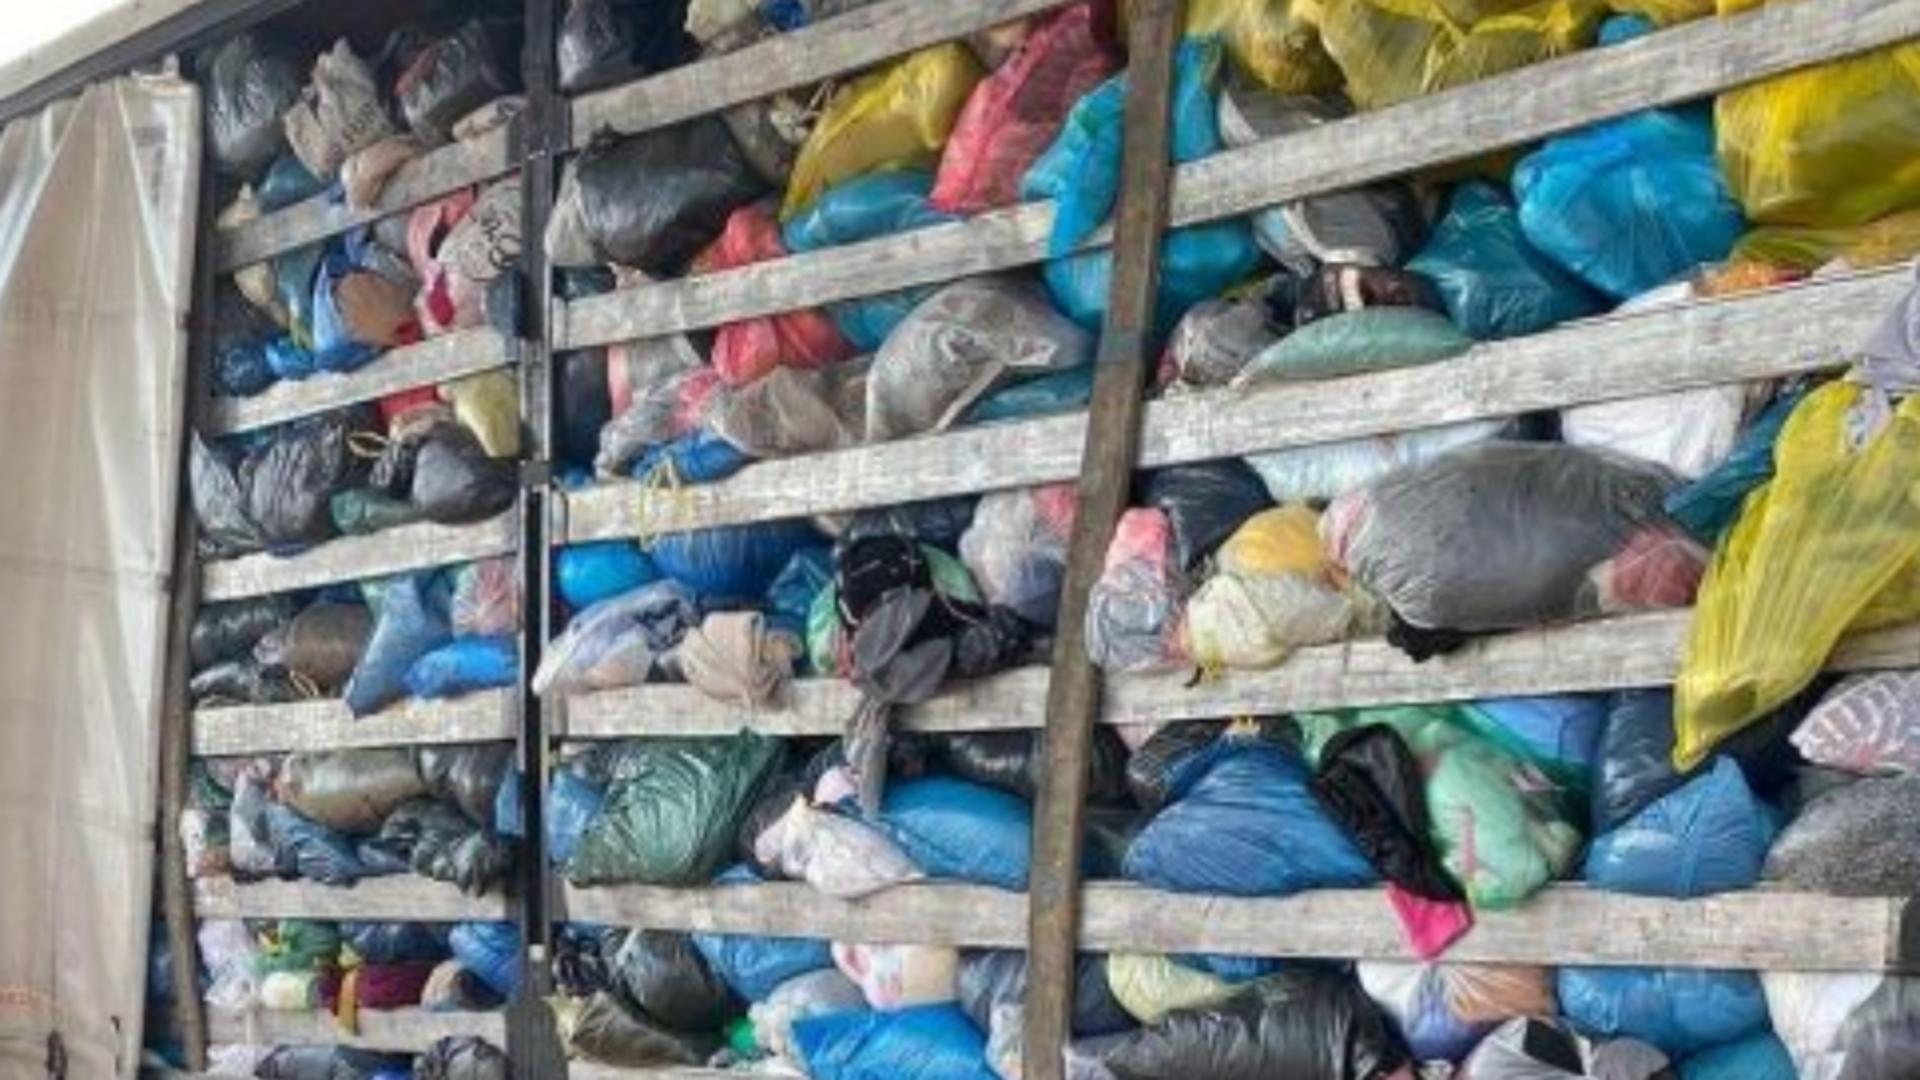 Peste 50 de tone de deşeuri oprite să intre în România - Marfa blocată la graniță vine din Italia, Anglia şi Germania